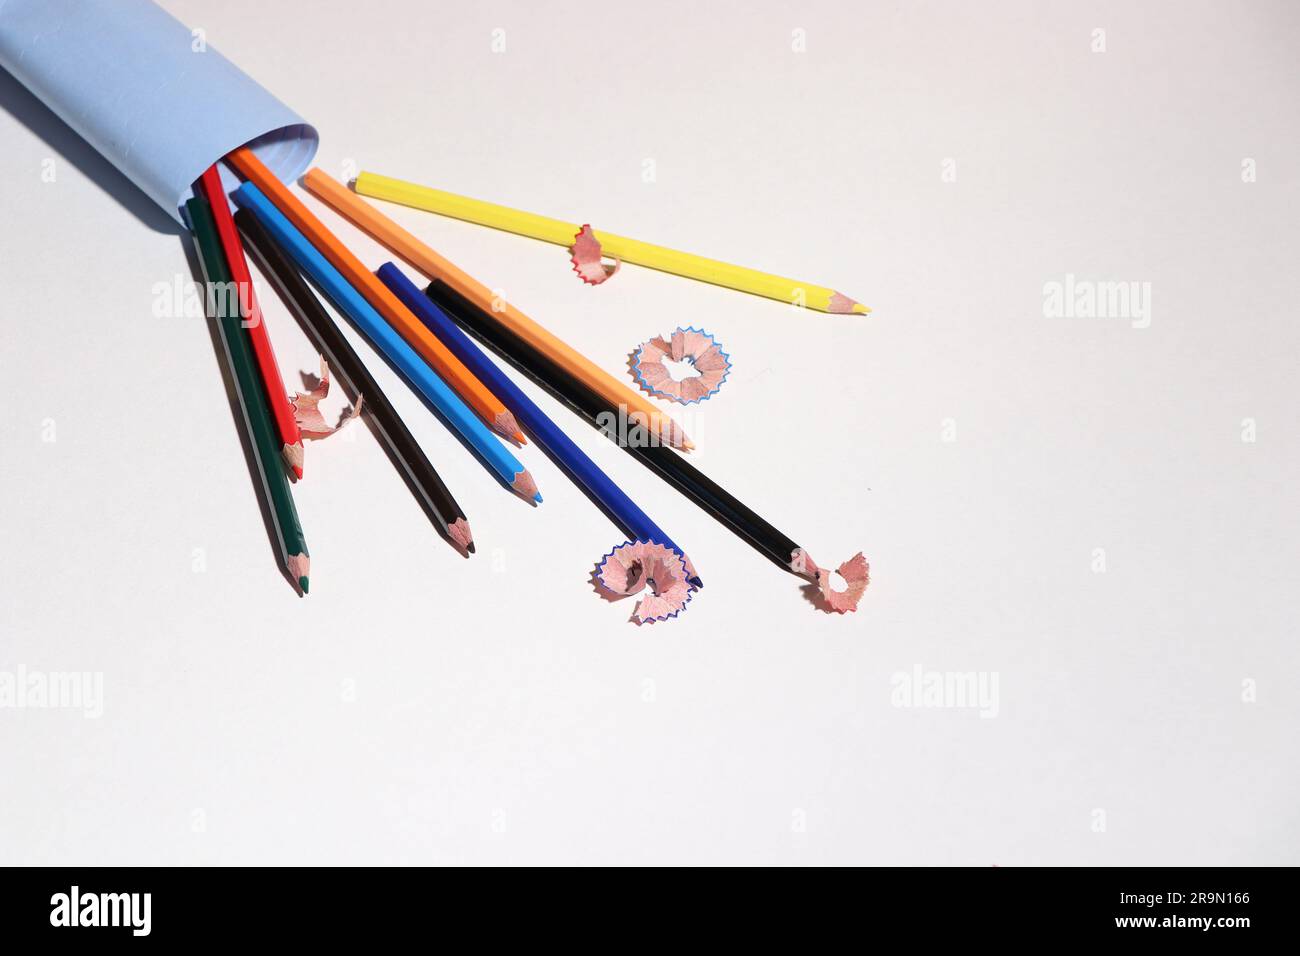 Une inspiration vibrante : explorez le spectre des couleurs avec nos crayons multicolores et notre image d'un crayon ! Banque D'Images